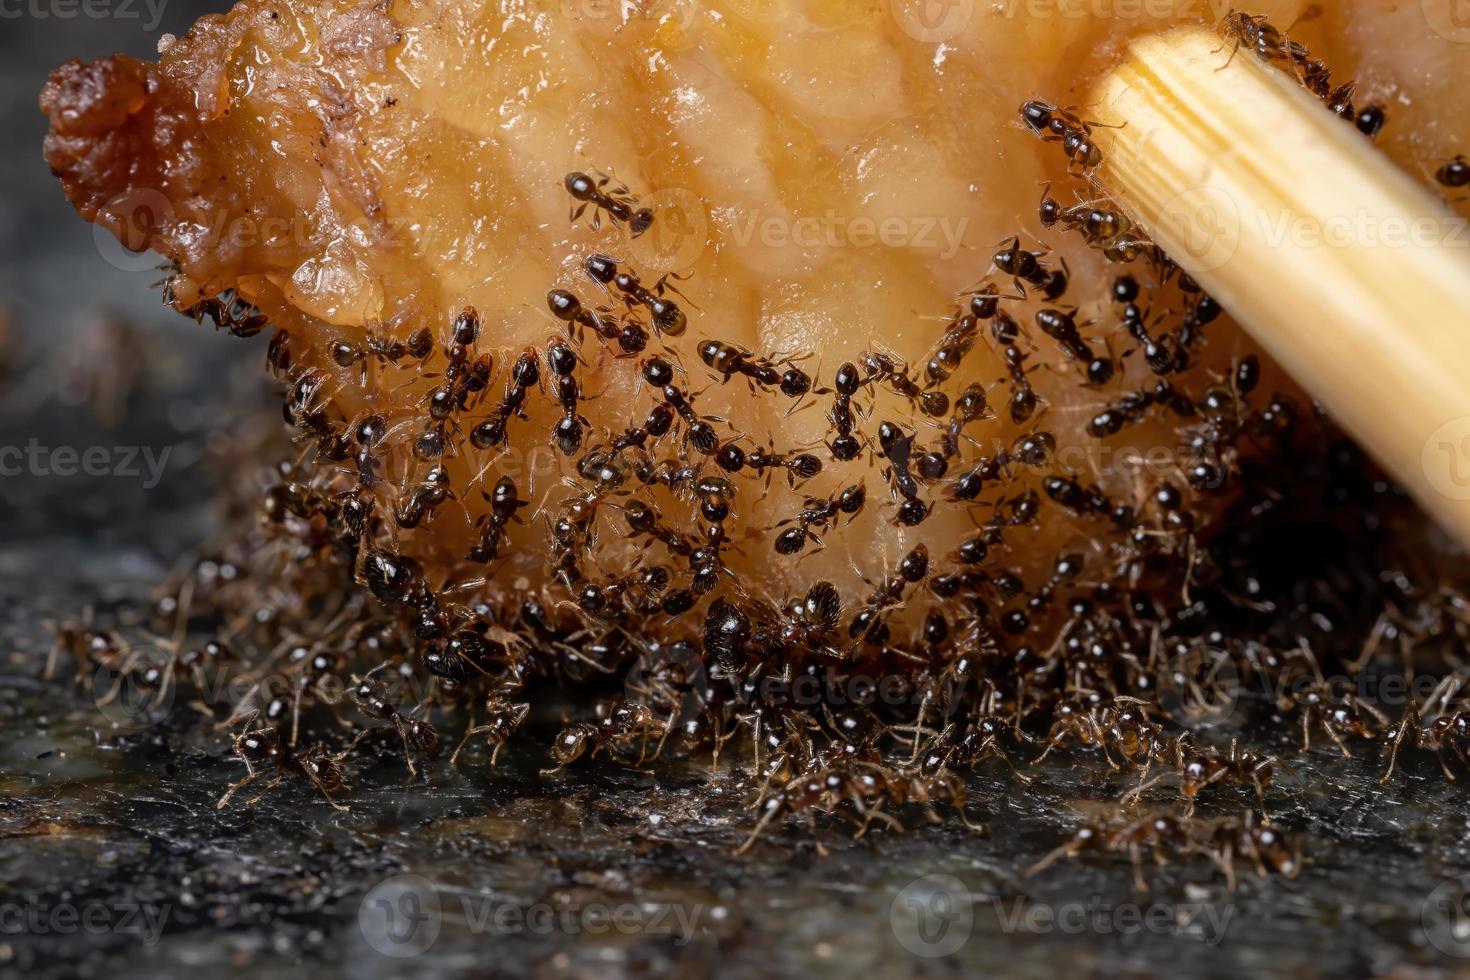 pequenas formigas de cabeça grande em gordura animal foto